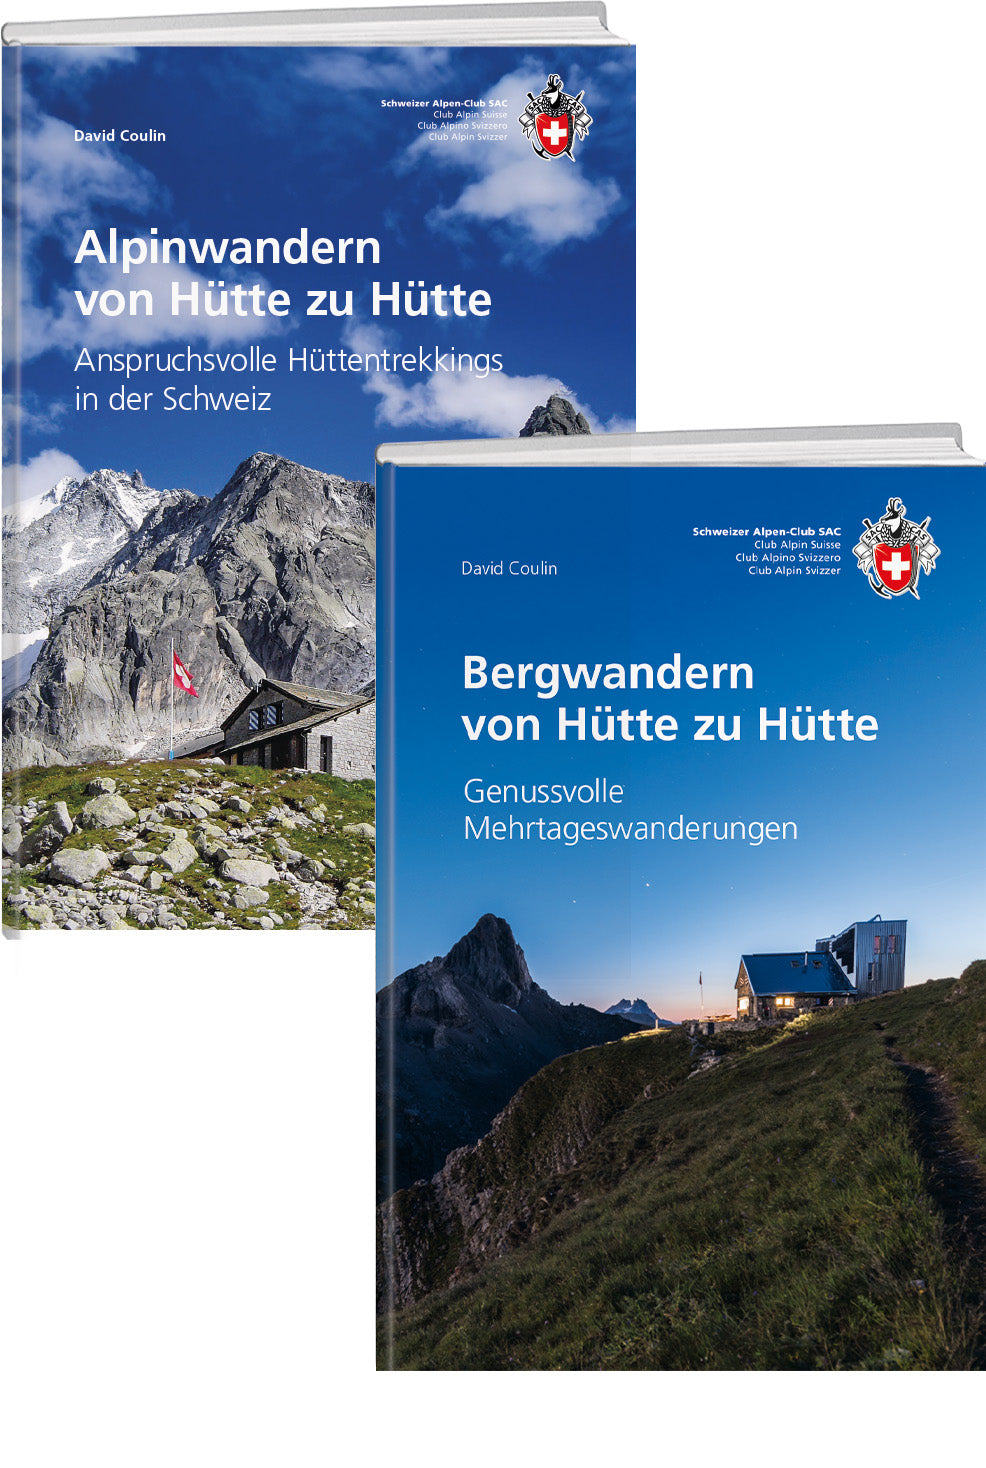 David Coulin | Kombipaket Bergwandern und Alpinwandern von Hütte zu Hütte - • WEBER VERLAG